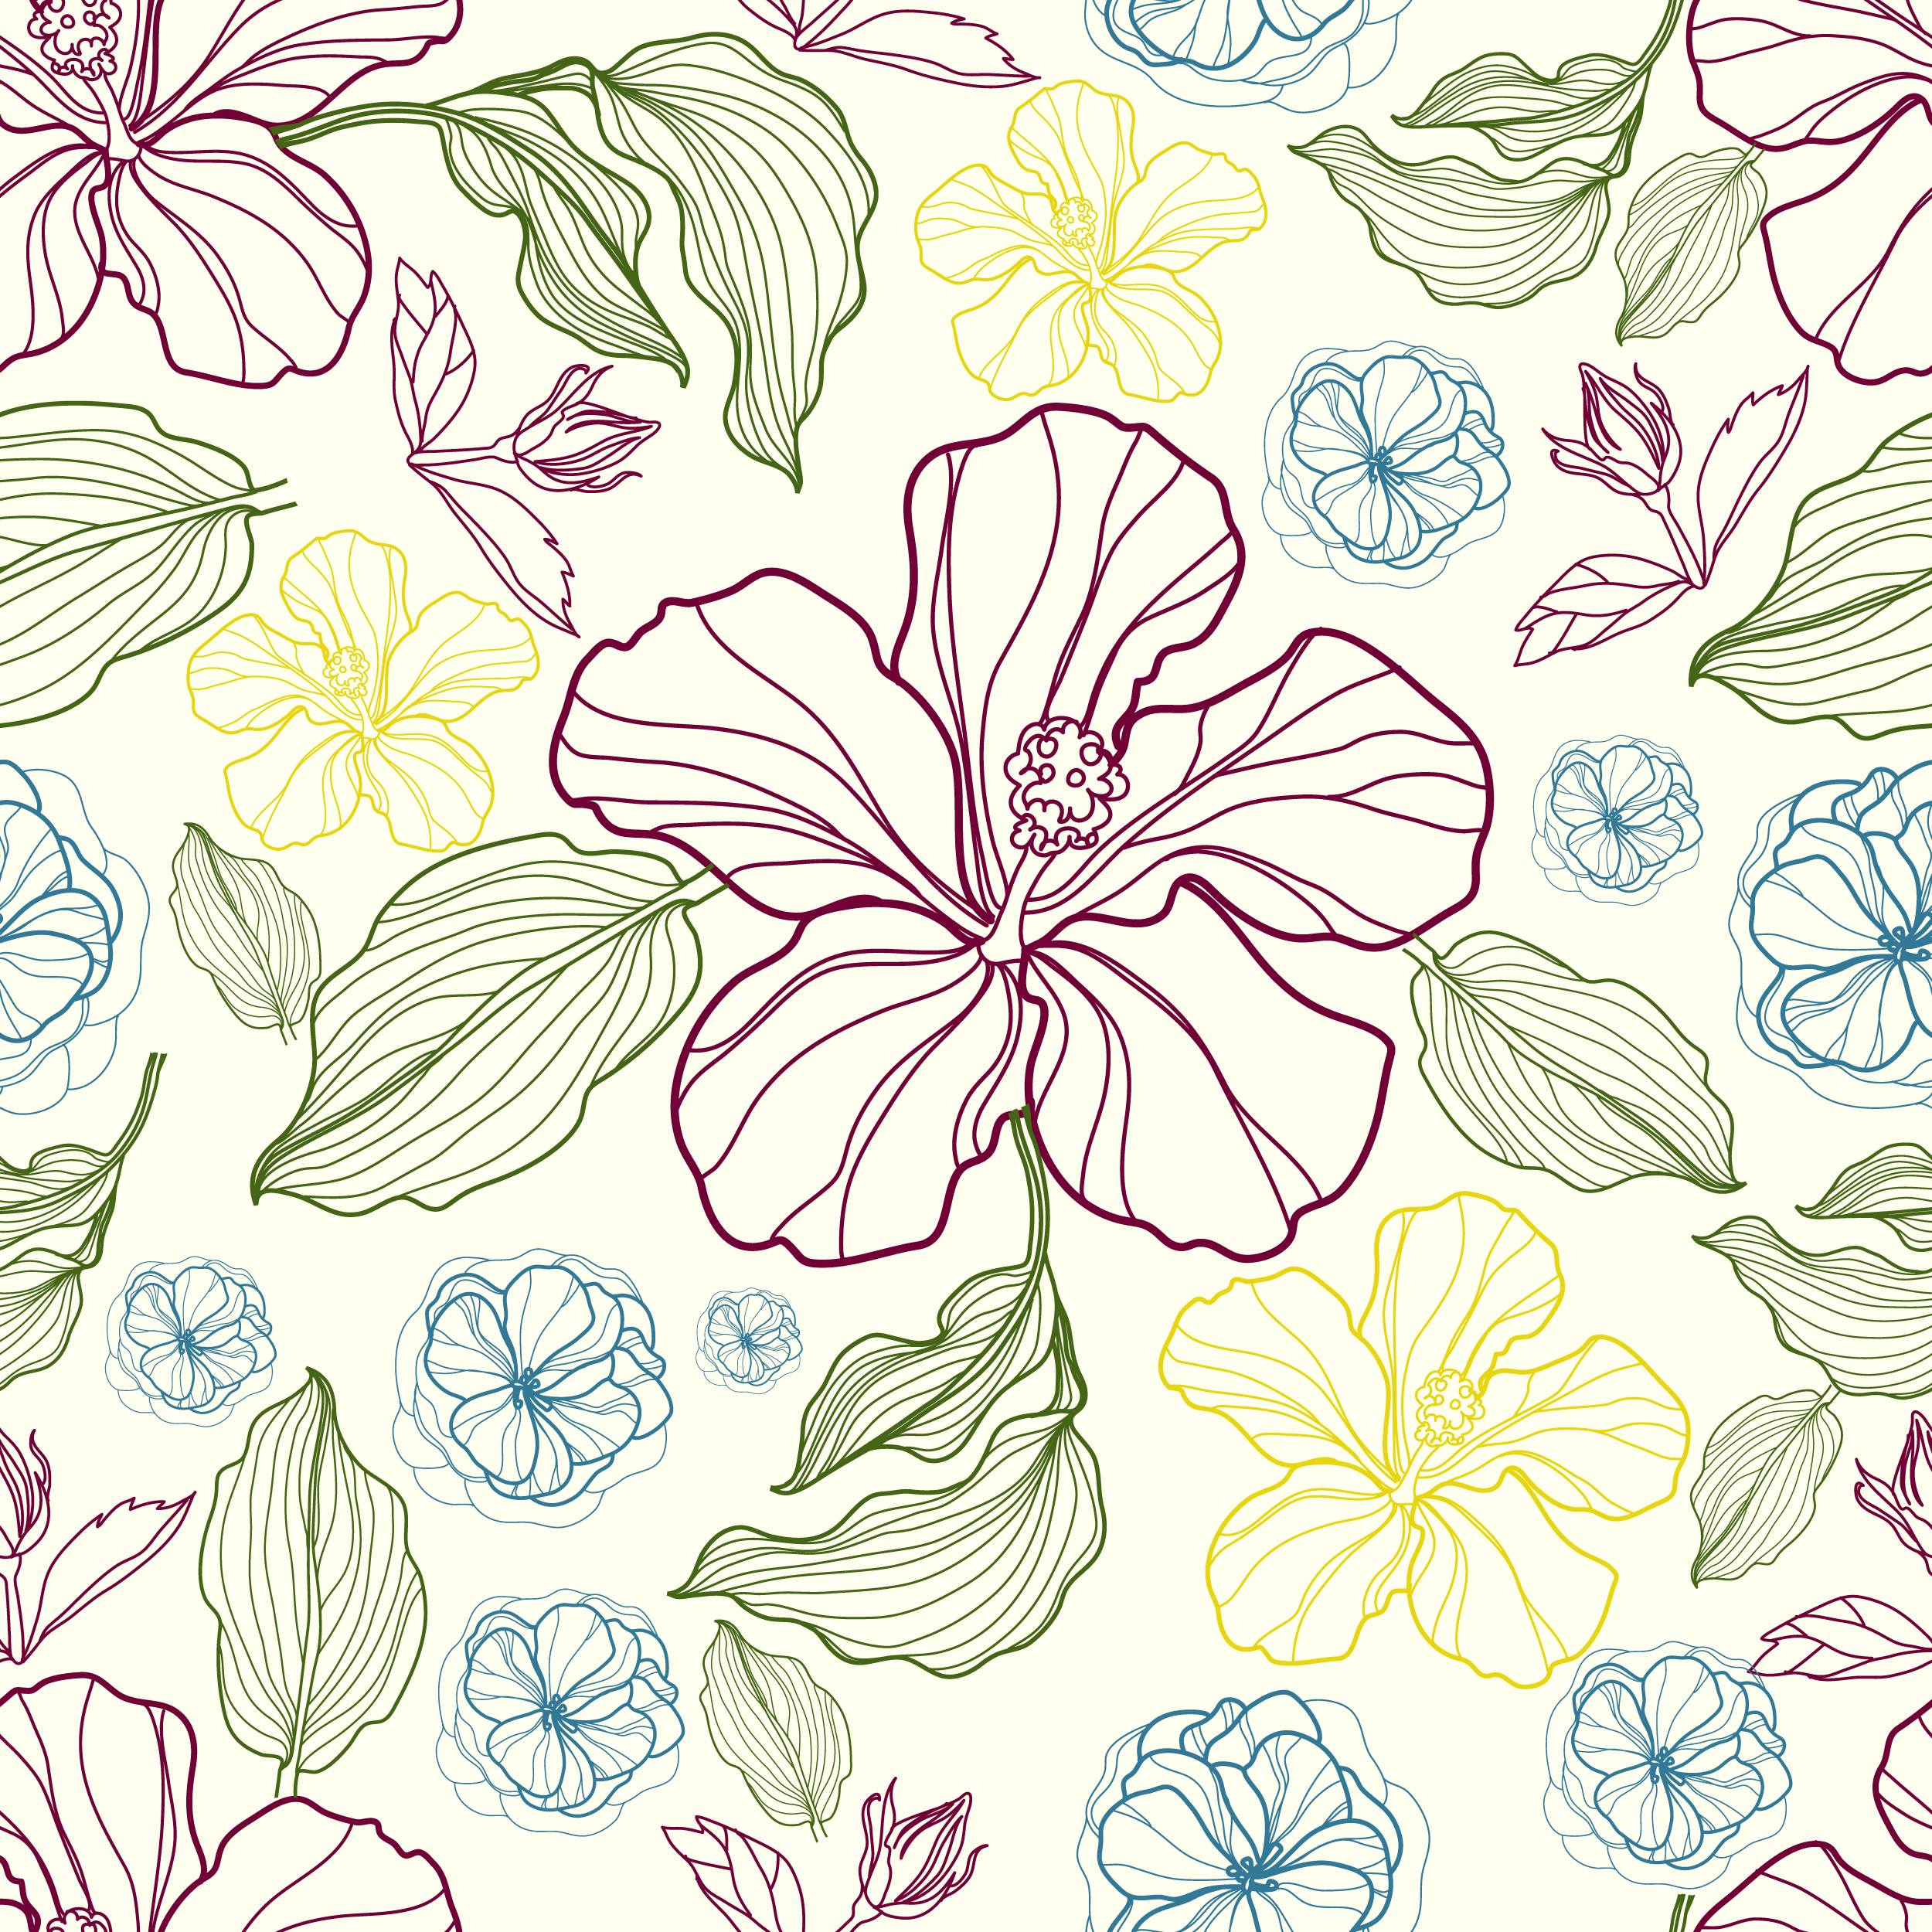 壁紙 背景イラスト 花の模様 柄 パターン No 336 線画 葉 紫青黄緑